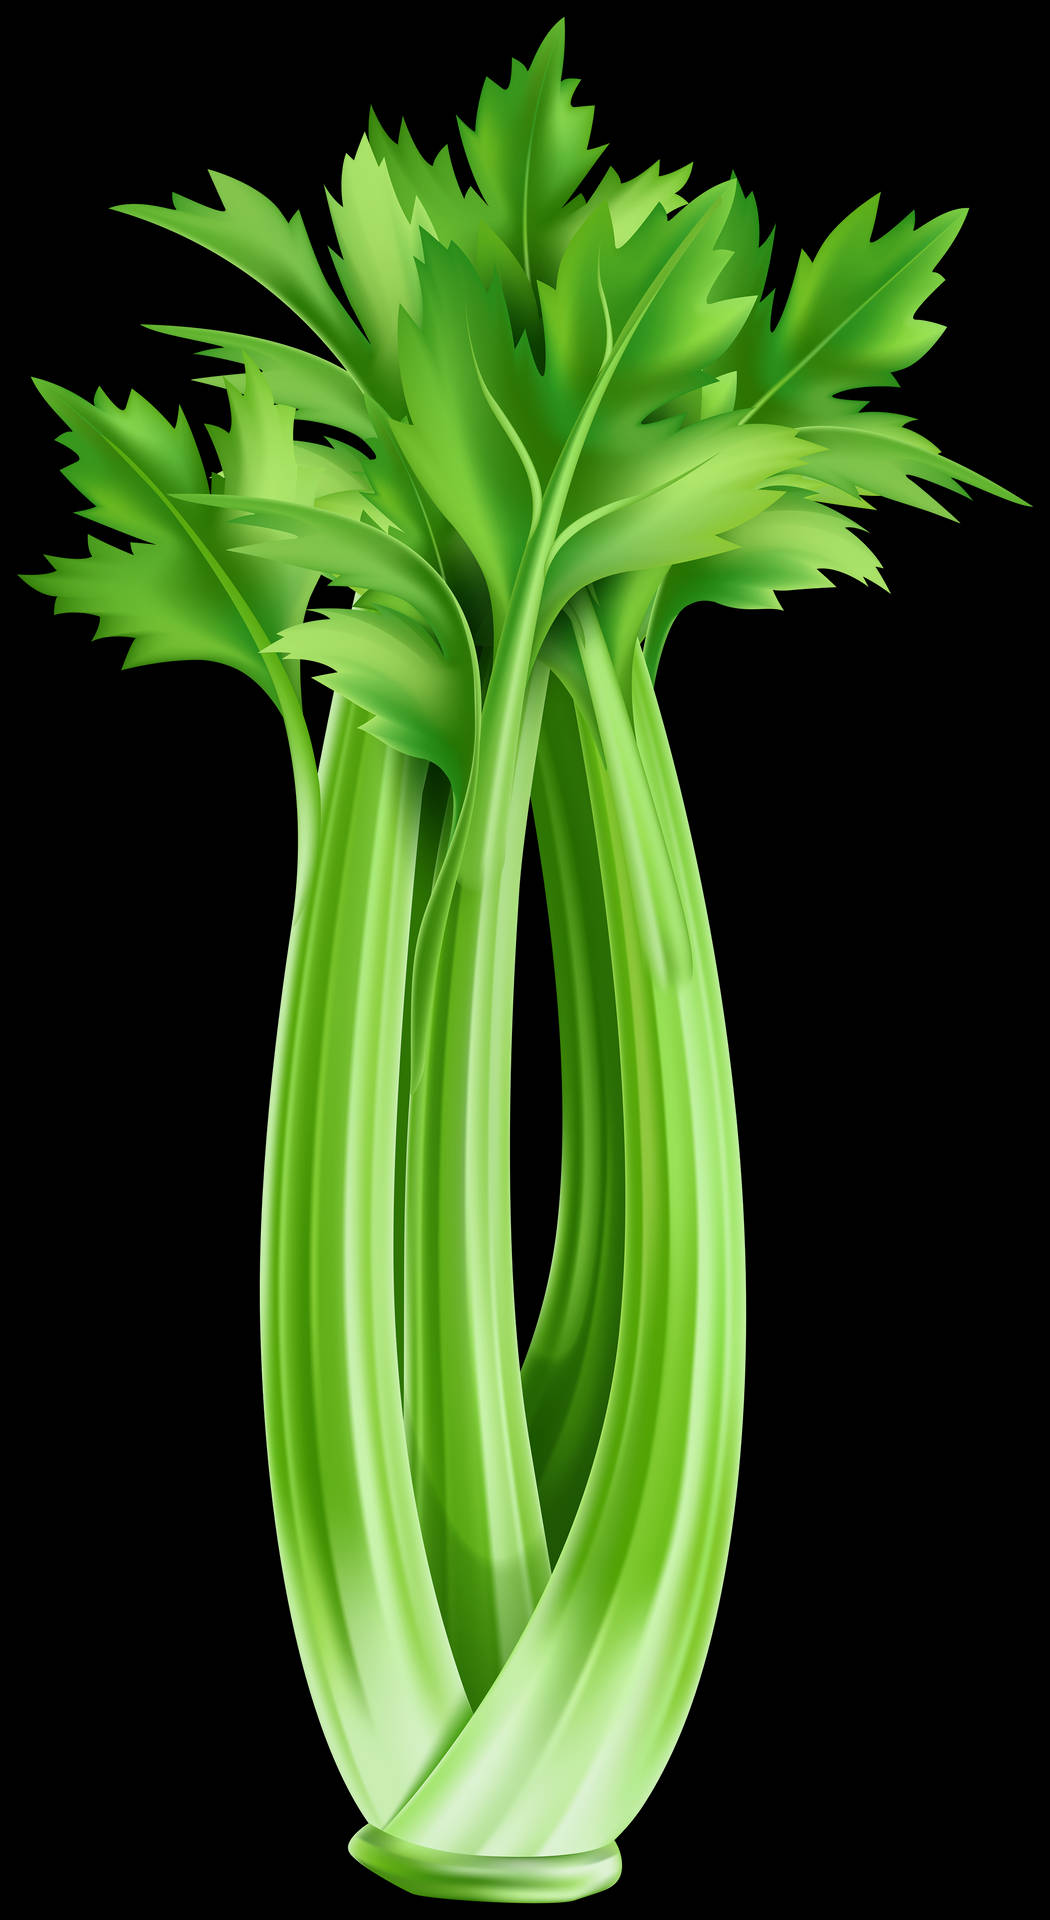 Fresh, Green Celery Stalks Growing in Marshland Wallpaper